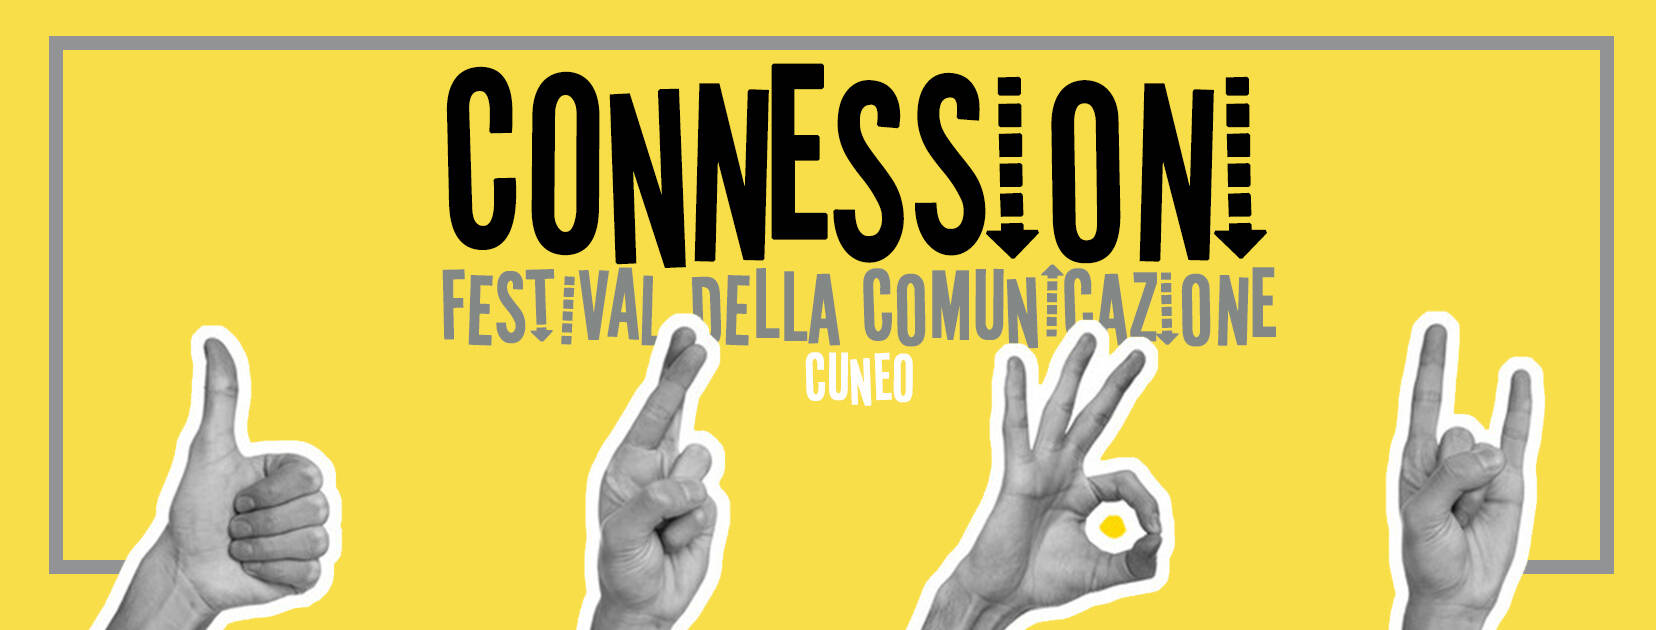 Cuneo si prepara al festival della comunicazione “Connessioni Festival 2021”